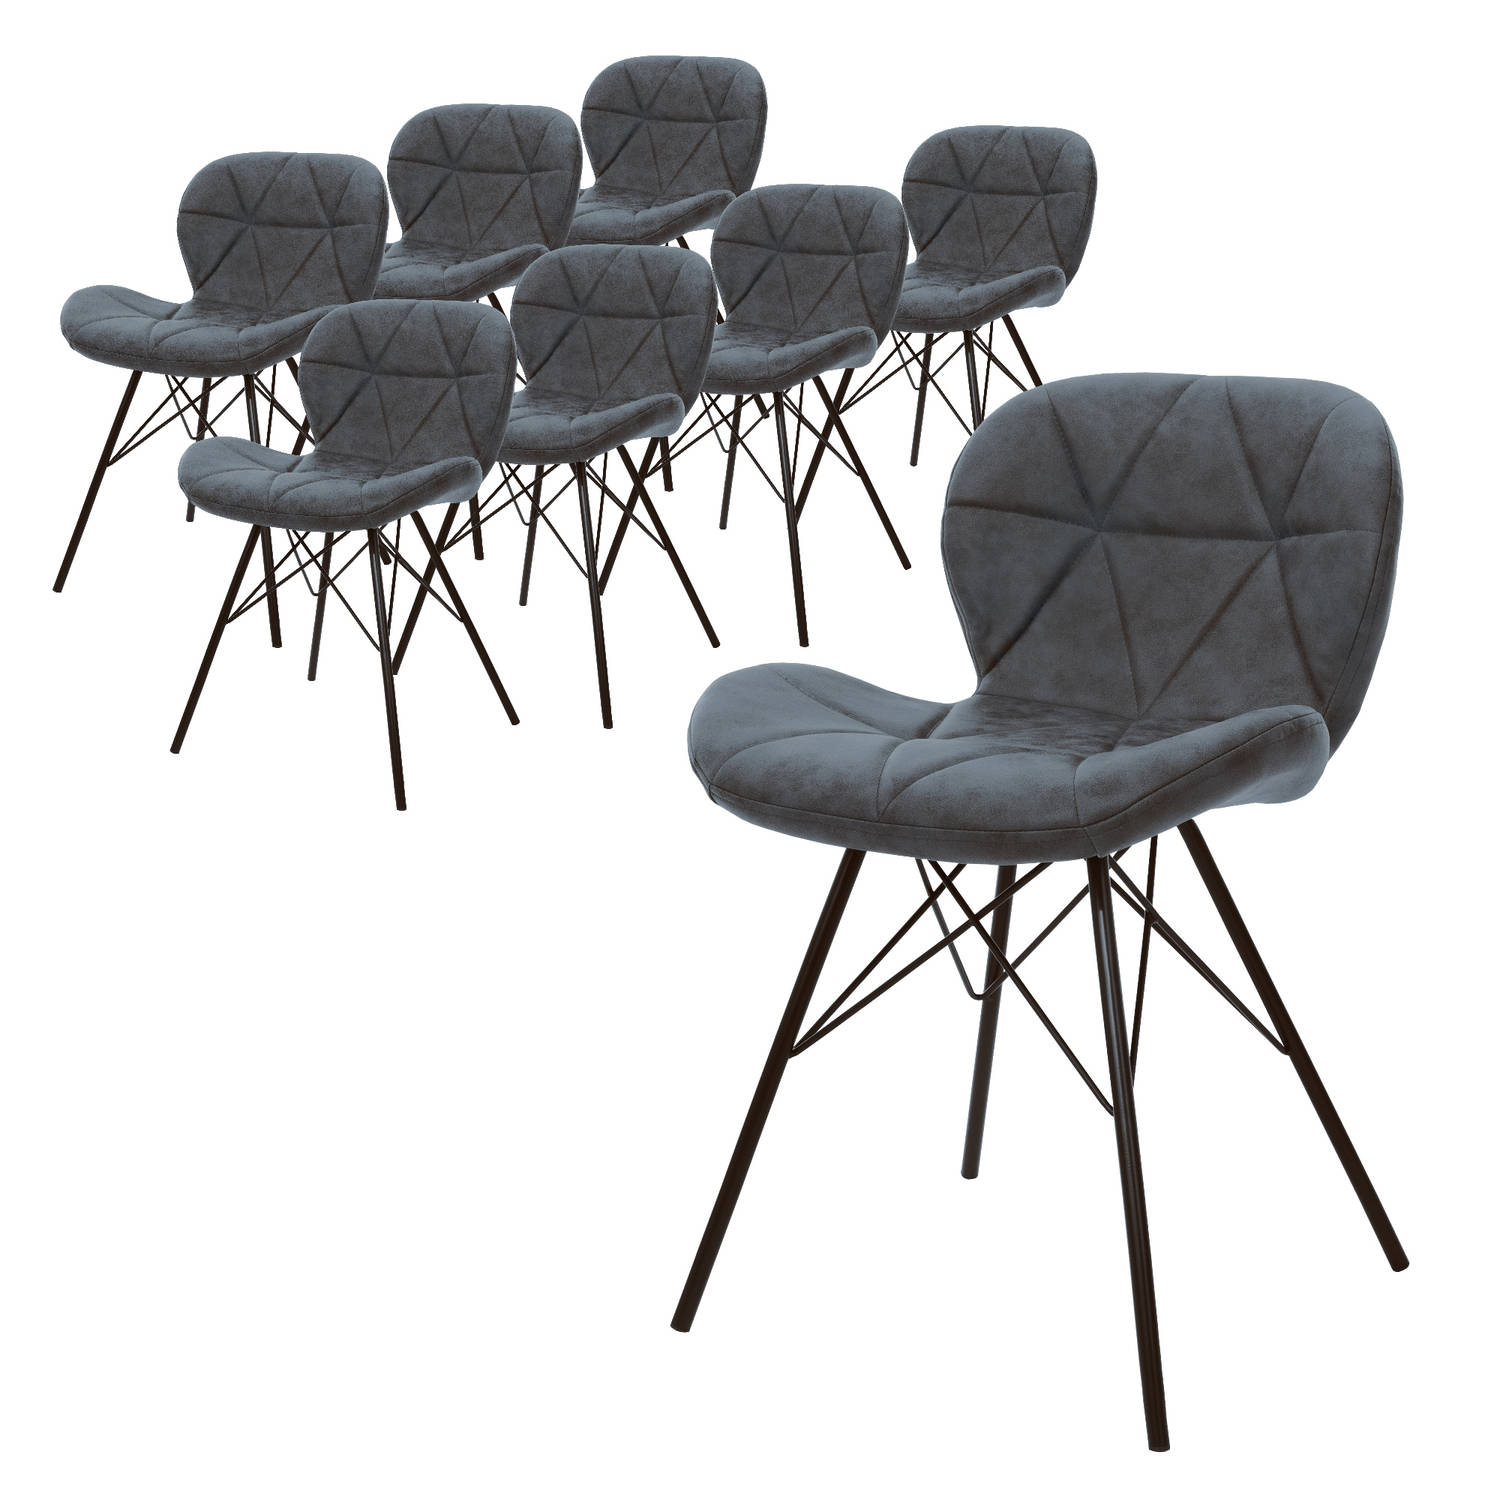 ML-Design set van 8 eetkamerstoelen met rugleuning, antraciet, keukenstoel met kunstleren bekleding, gestoffeerde stoel met metalen poten, ergonomische eettafelstoel, woonkamerstoe